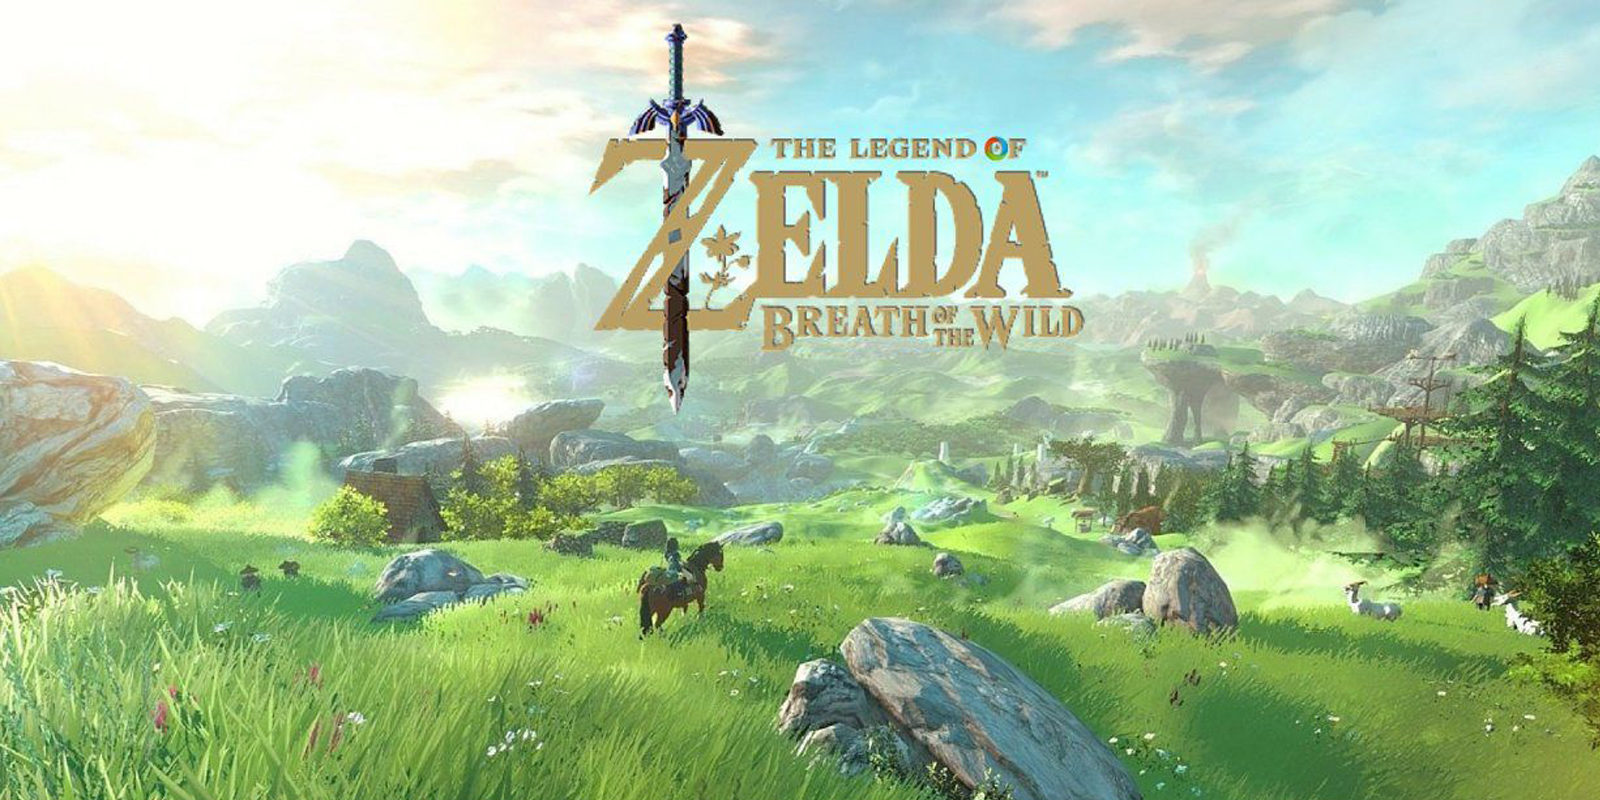 'The Legend of Zelda: Breath of the Wild' gana el Golden Joystick al mejor juego del año